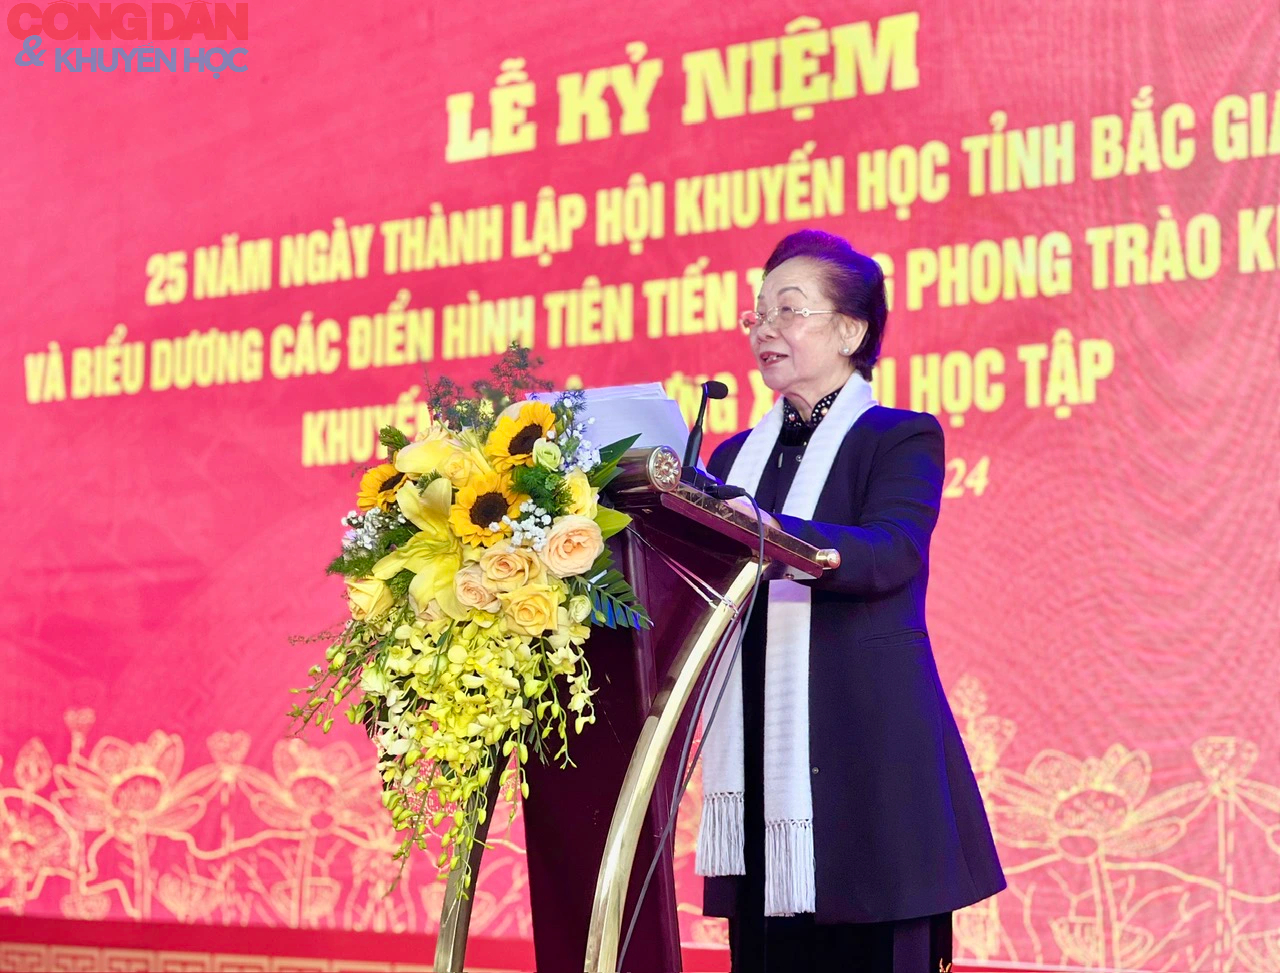 25 năm thành lập Hội Khuyến học tỉnh Bắc Giang: Phát triển không ngừng, phát triển vững chắc- Ảnh 7.